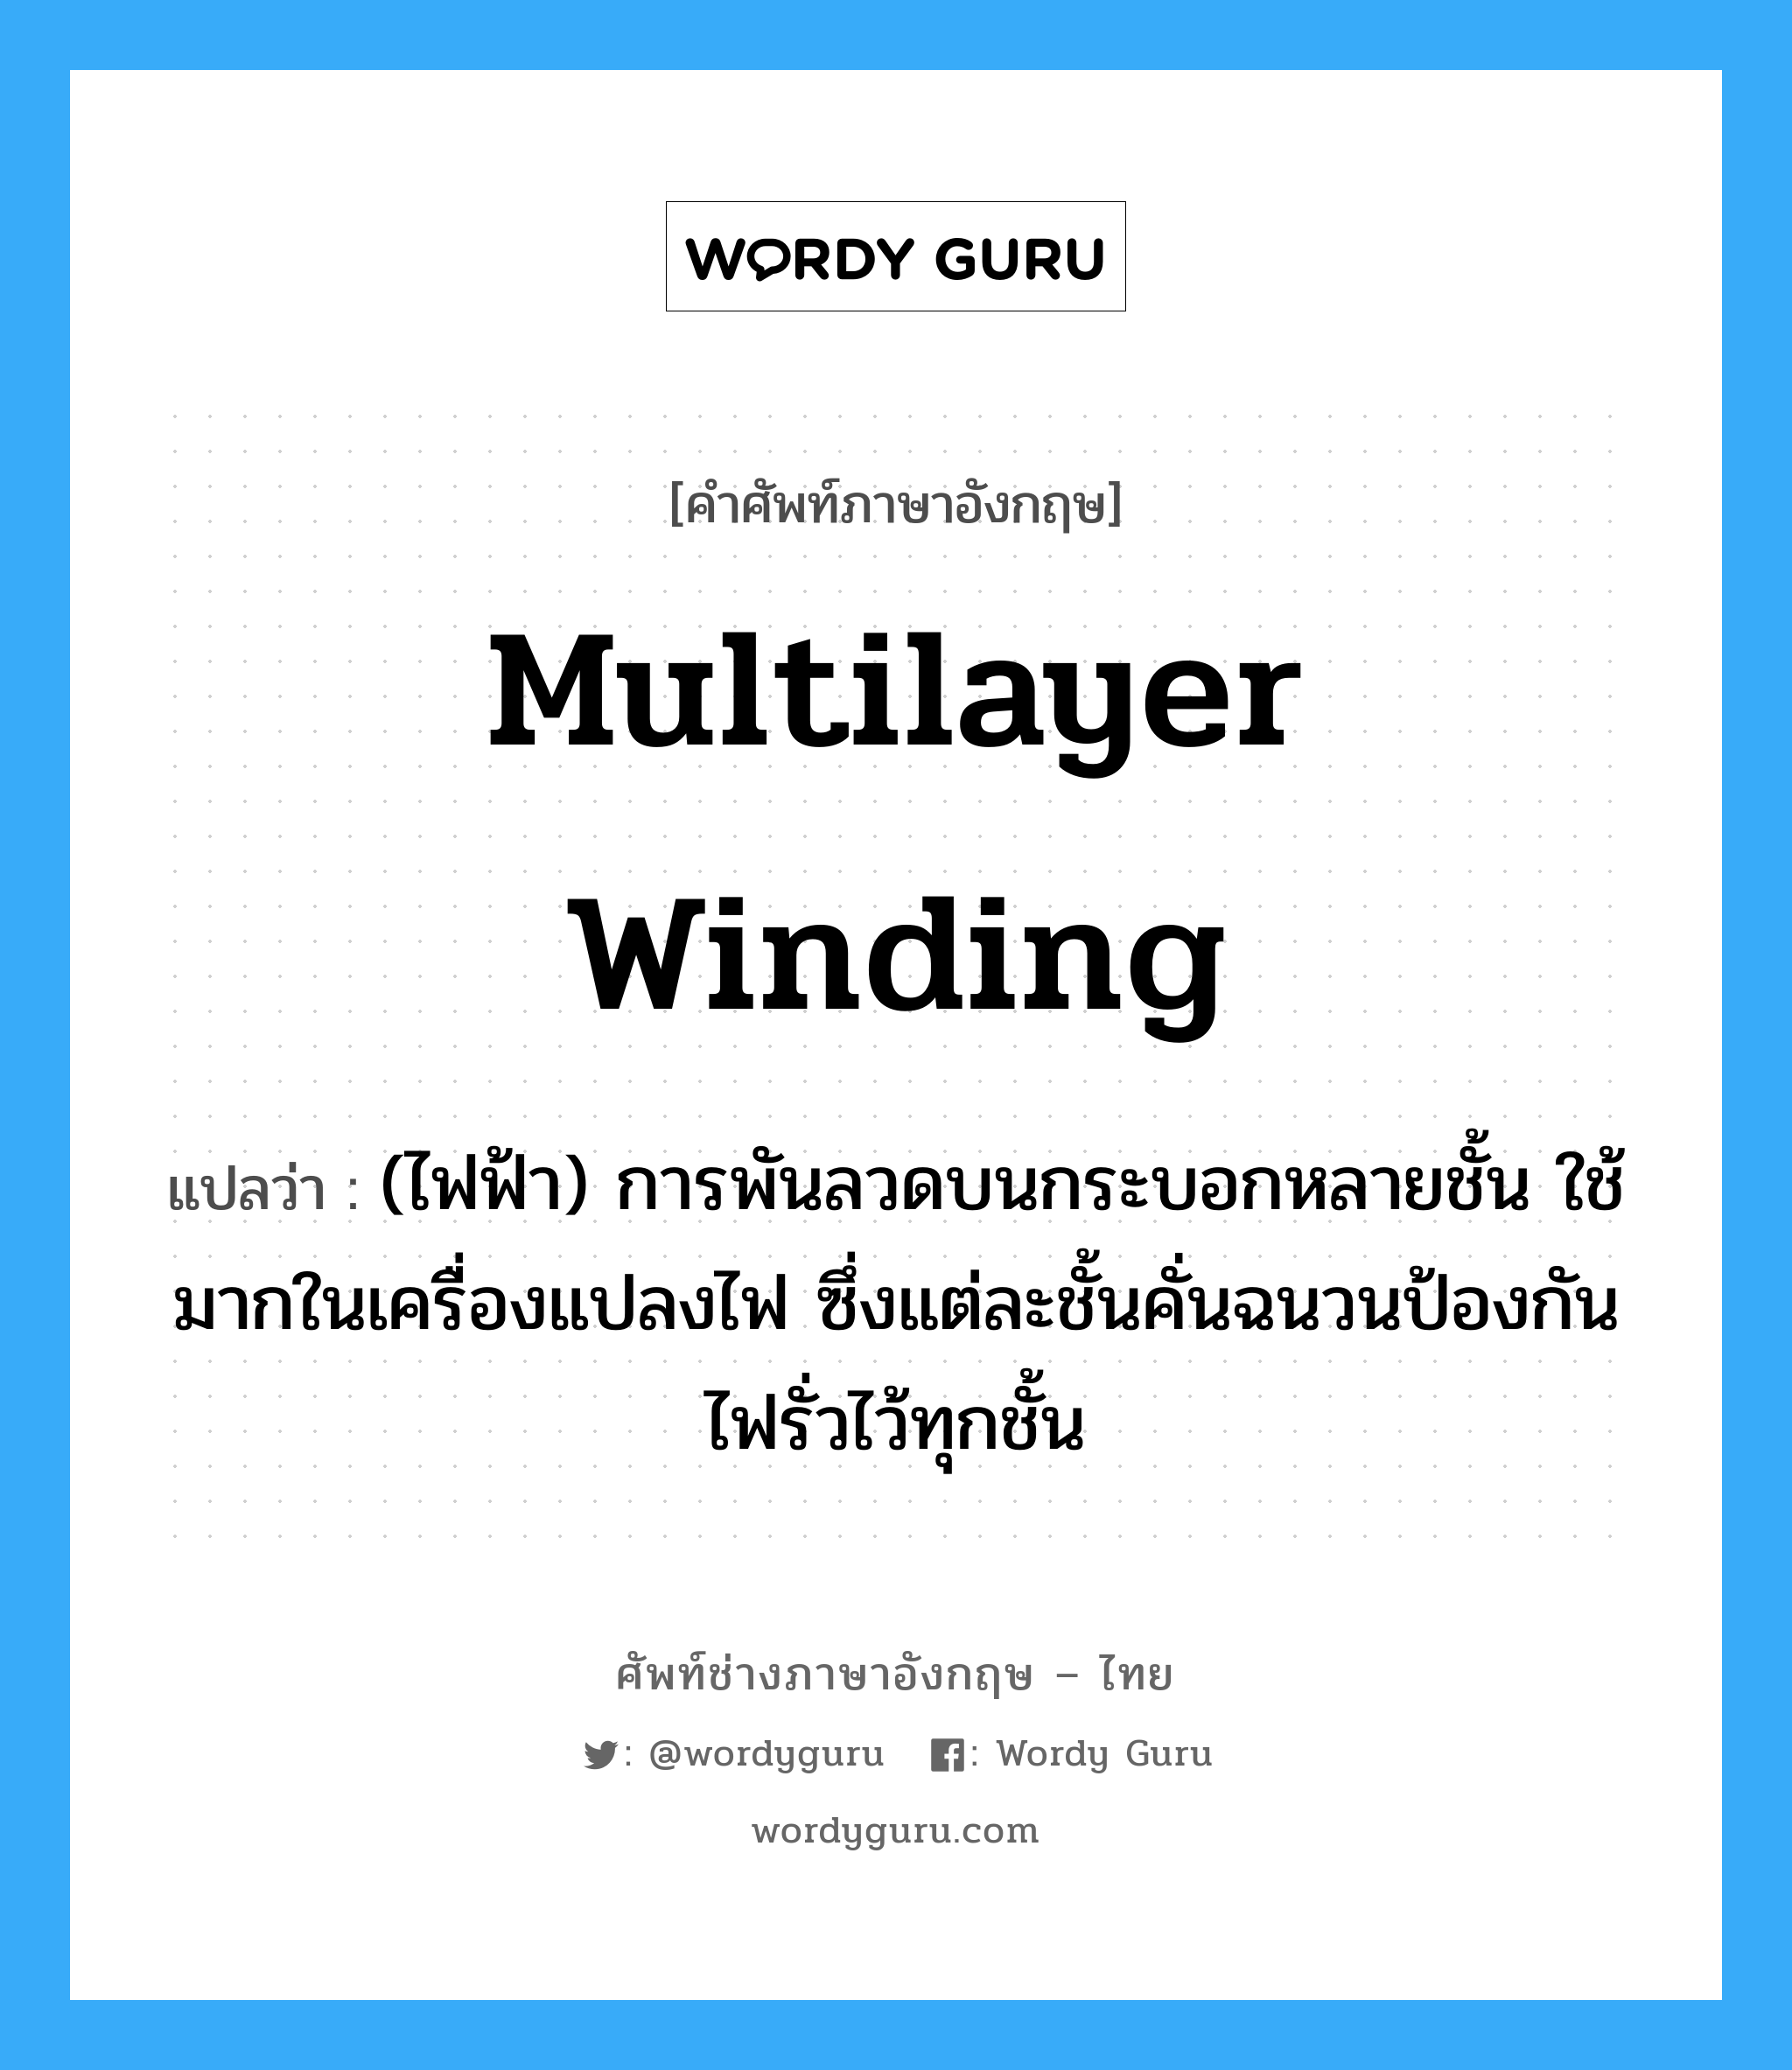 multilayer winding แปลว่า?, คำศัพท์ช่างภาษาอังกฤษ - ไทย multilayer winding คำศัพท์ภาษาอังกฤษ multilayer winding แปลว่า (ไฟฟ้า) การพันลวดบนกระบอกหลายชั้น ใช้มากในเครื่องแปลงไฟ ซึ่งแต่ละชั้นคั่นฉนวนป้องกันไฟรั่วไว้ทุกชั้น